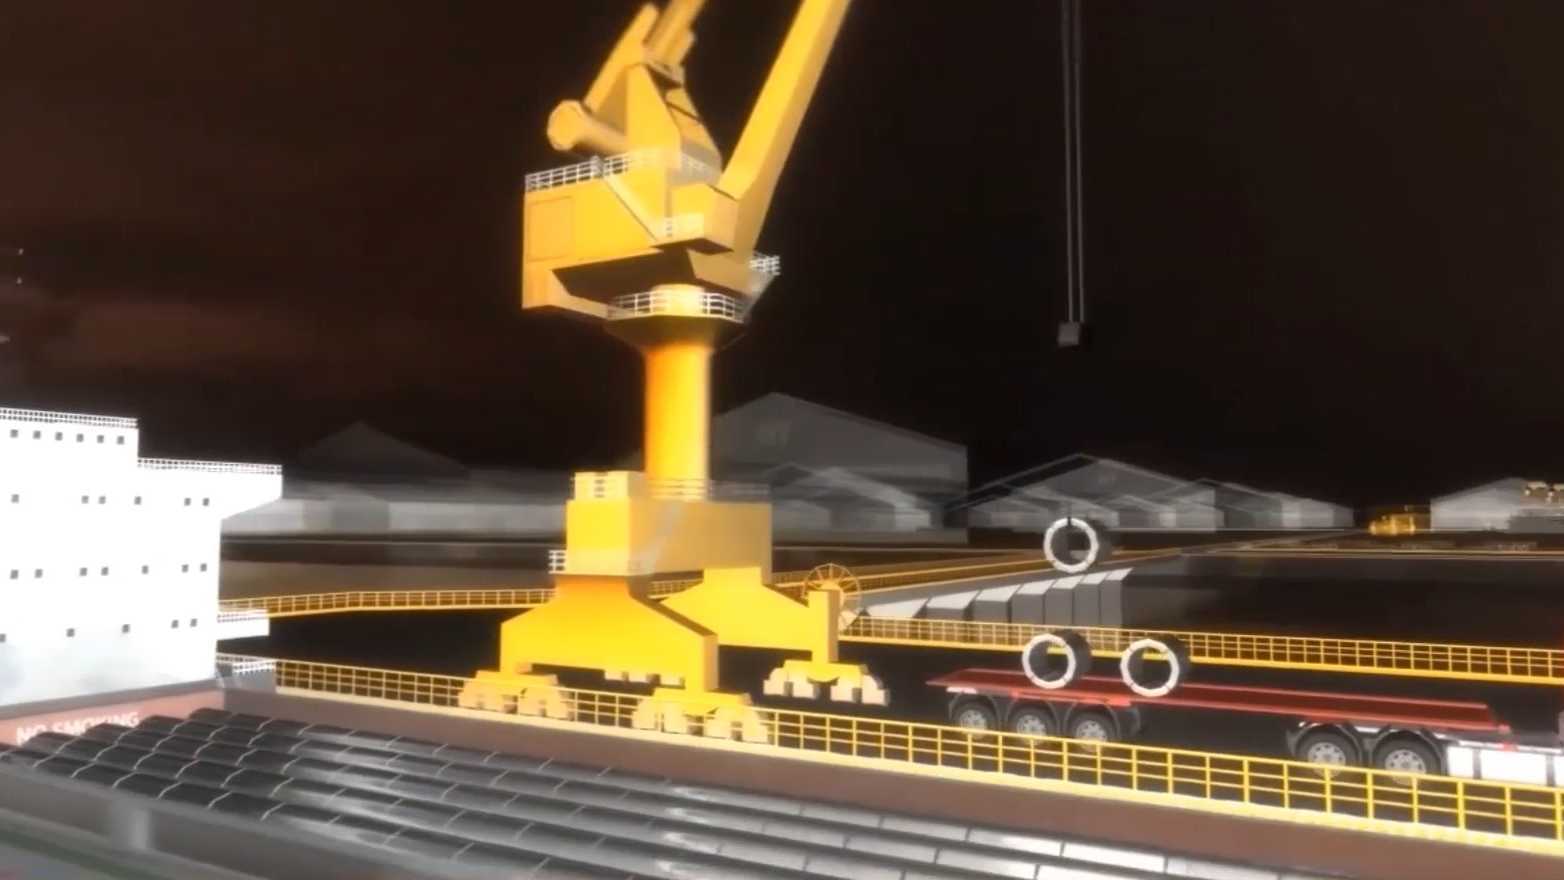 钢铁全流程生产动画 生产制造动画 生产制造视频 冶金工厂动画 扬州动画制作